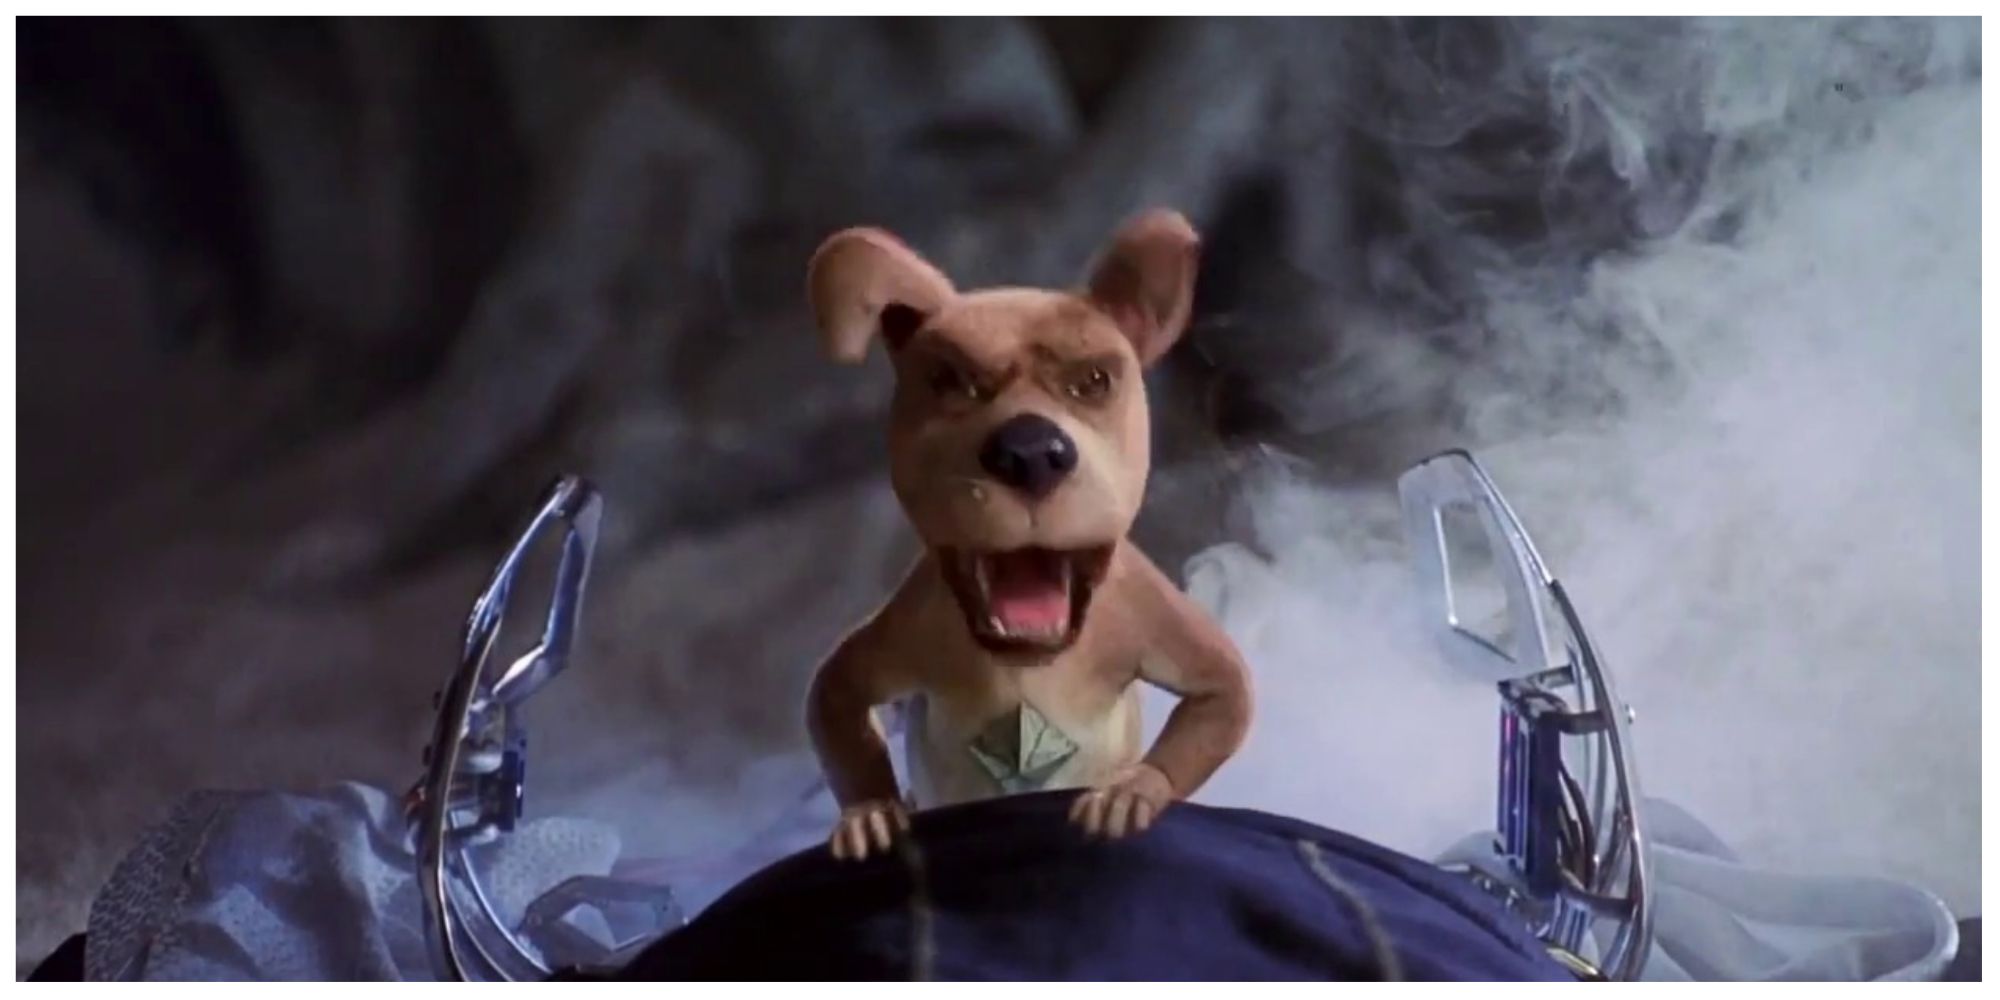 Scrappy Doo in Scooby-Doo (2002)